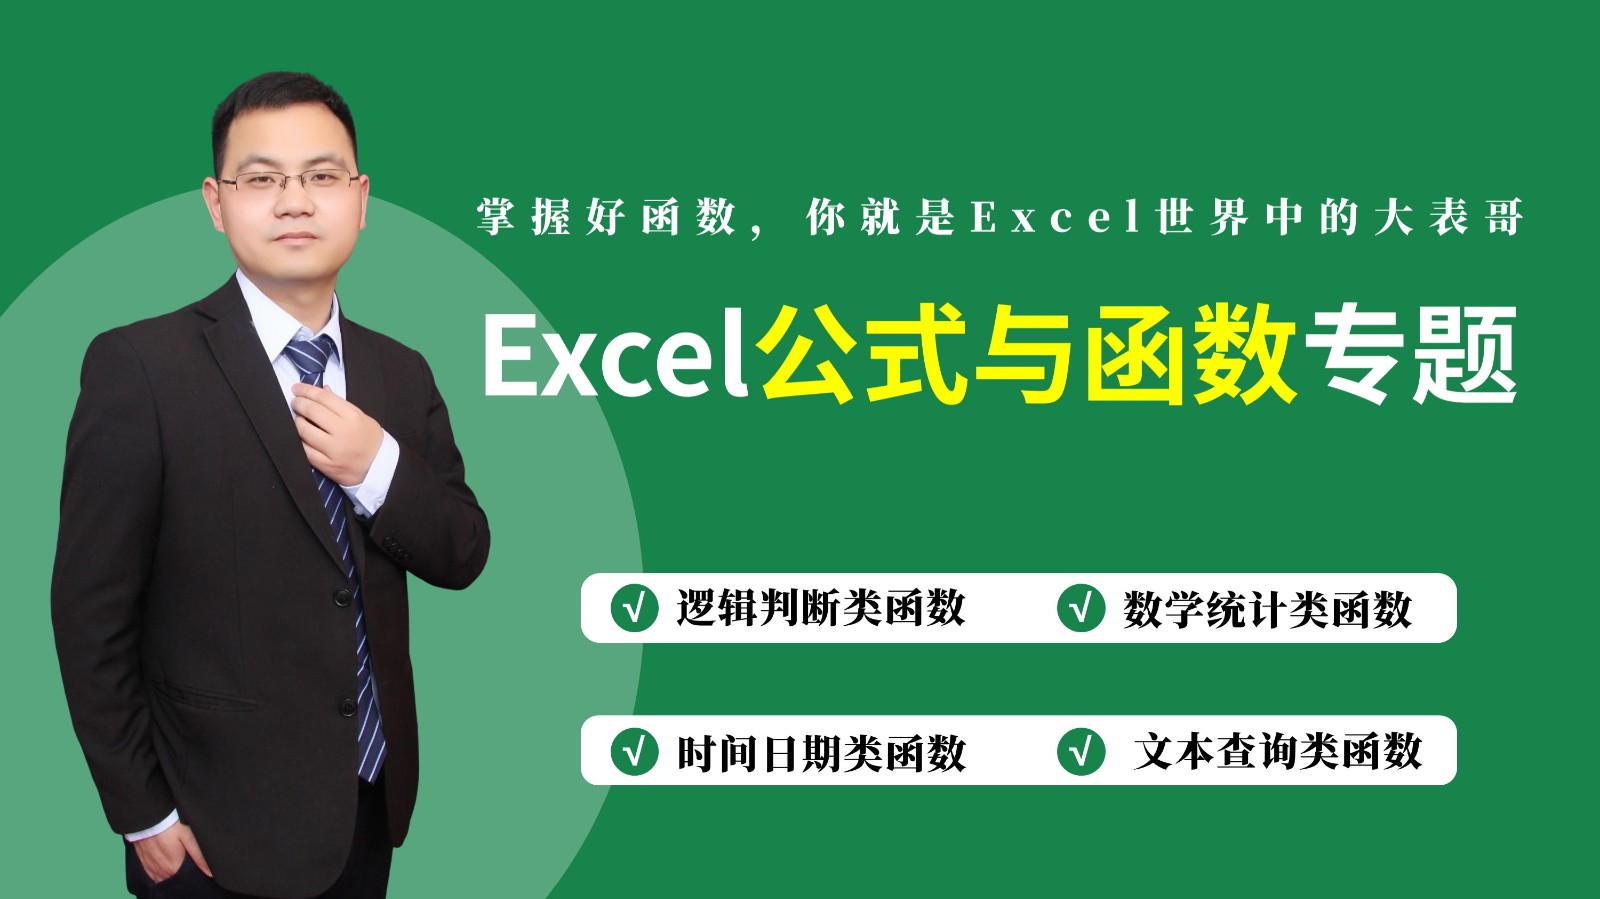 Excel公式与函数基础与提升高效办公课程